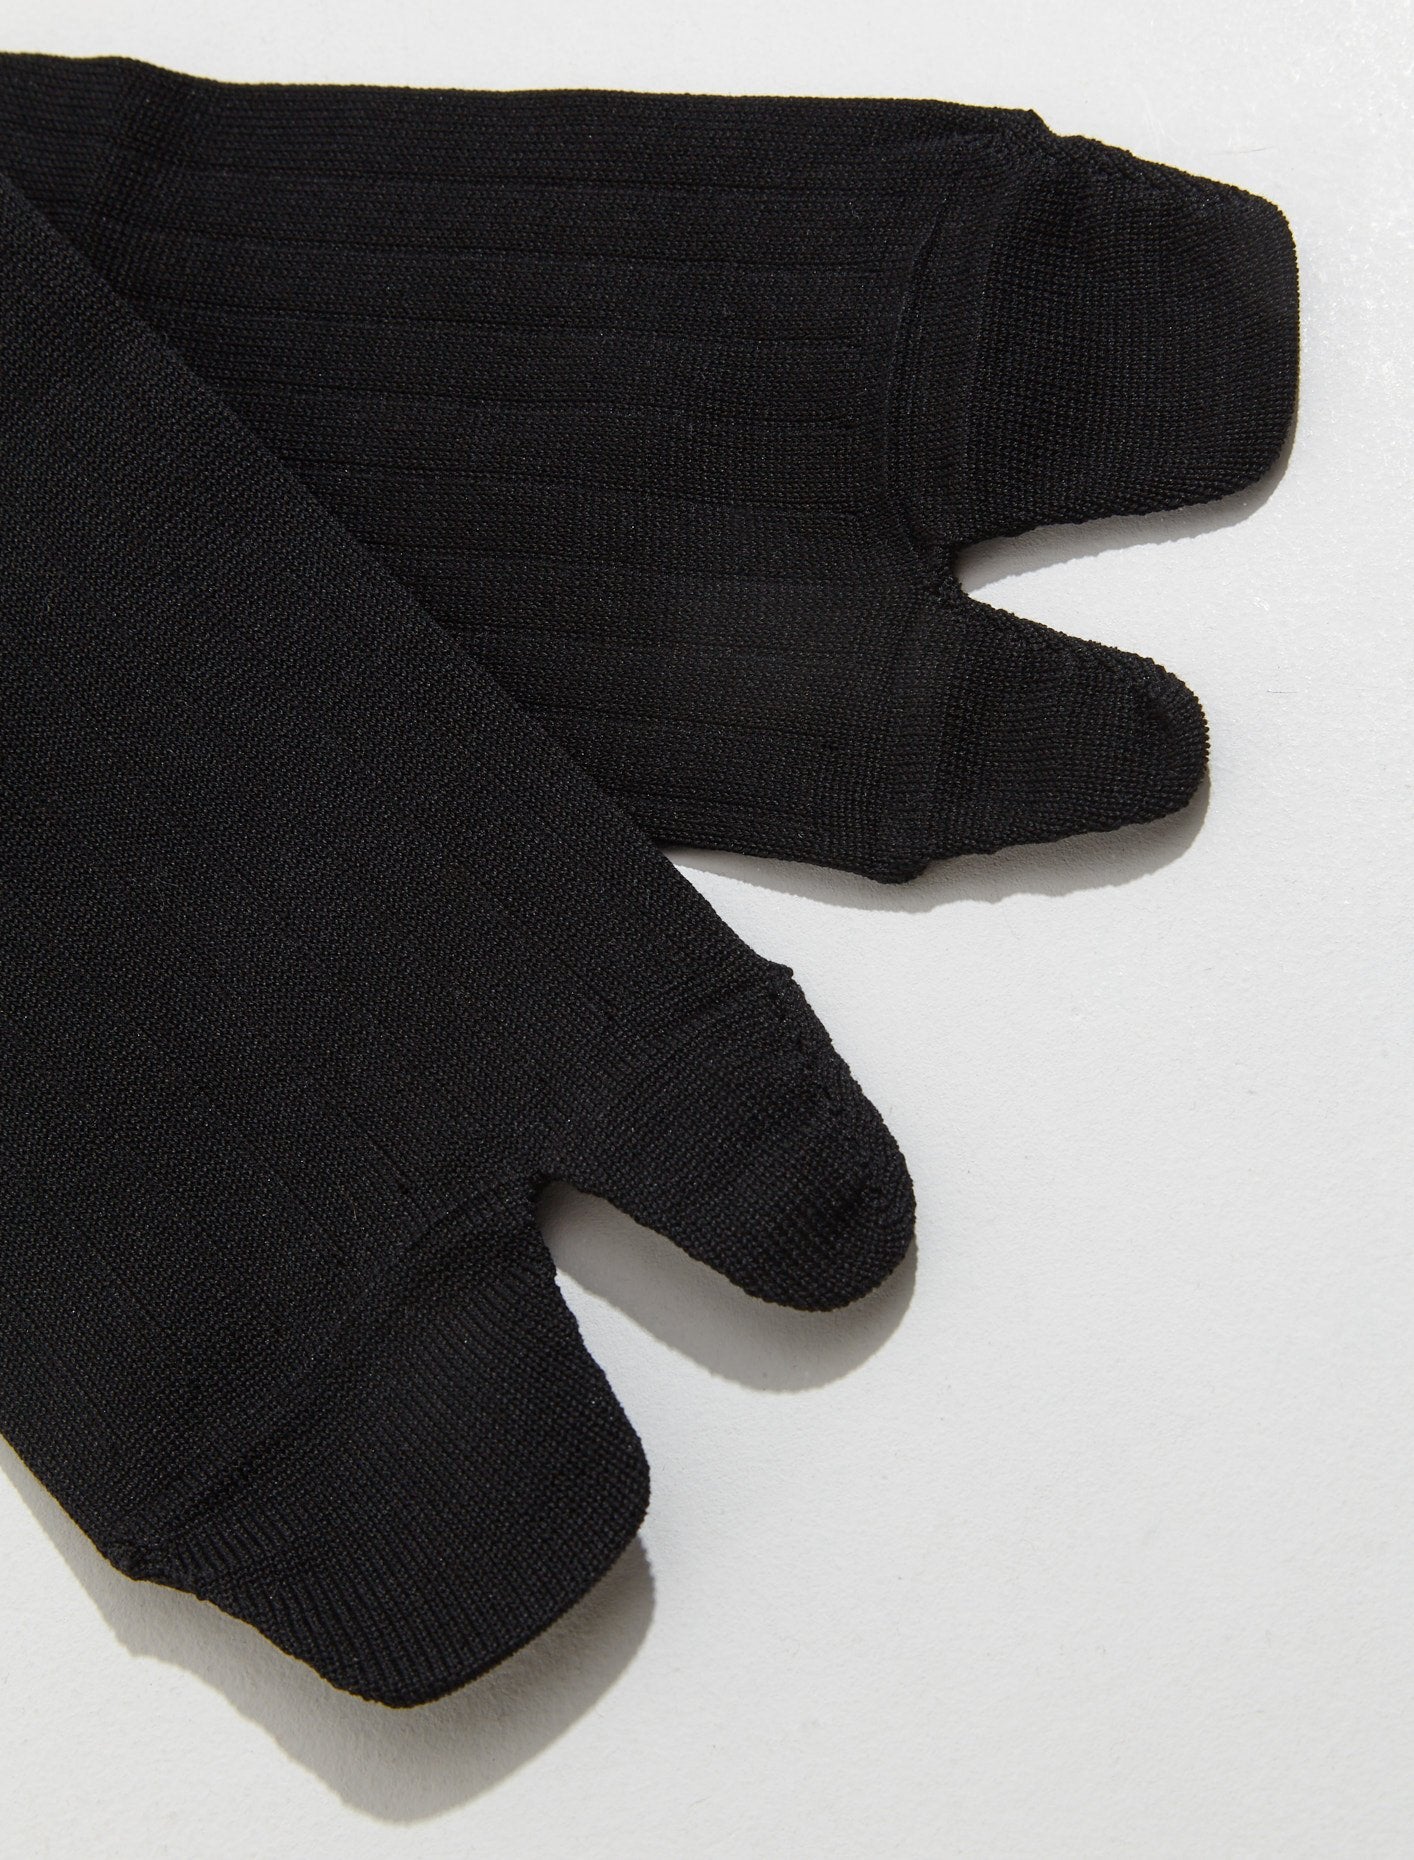 Tabi Socks in Black